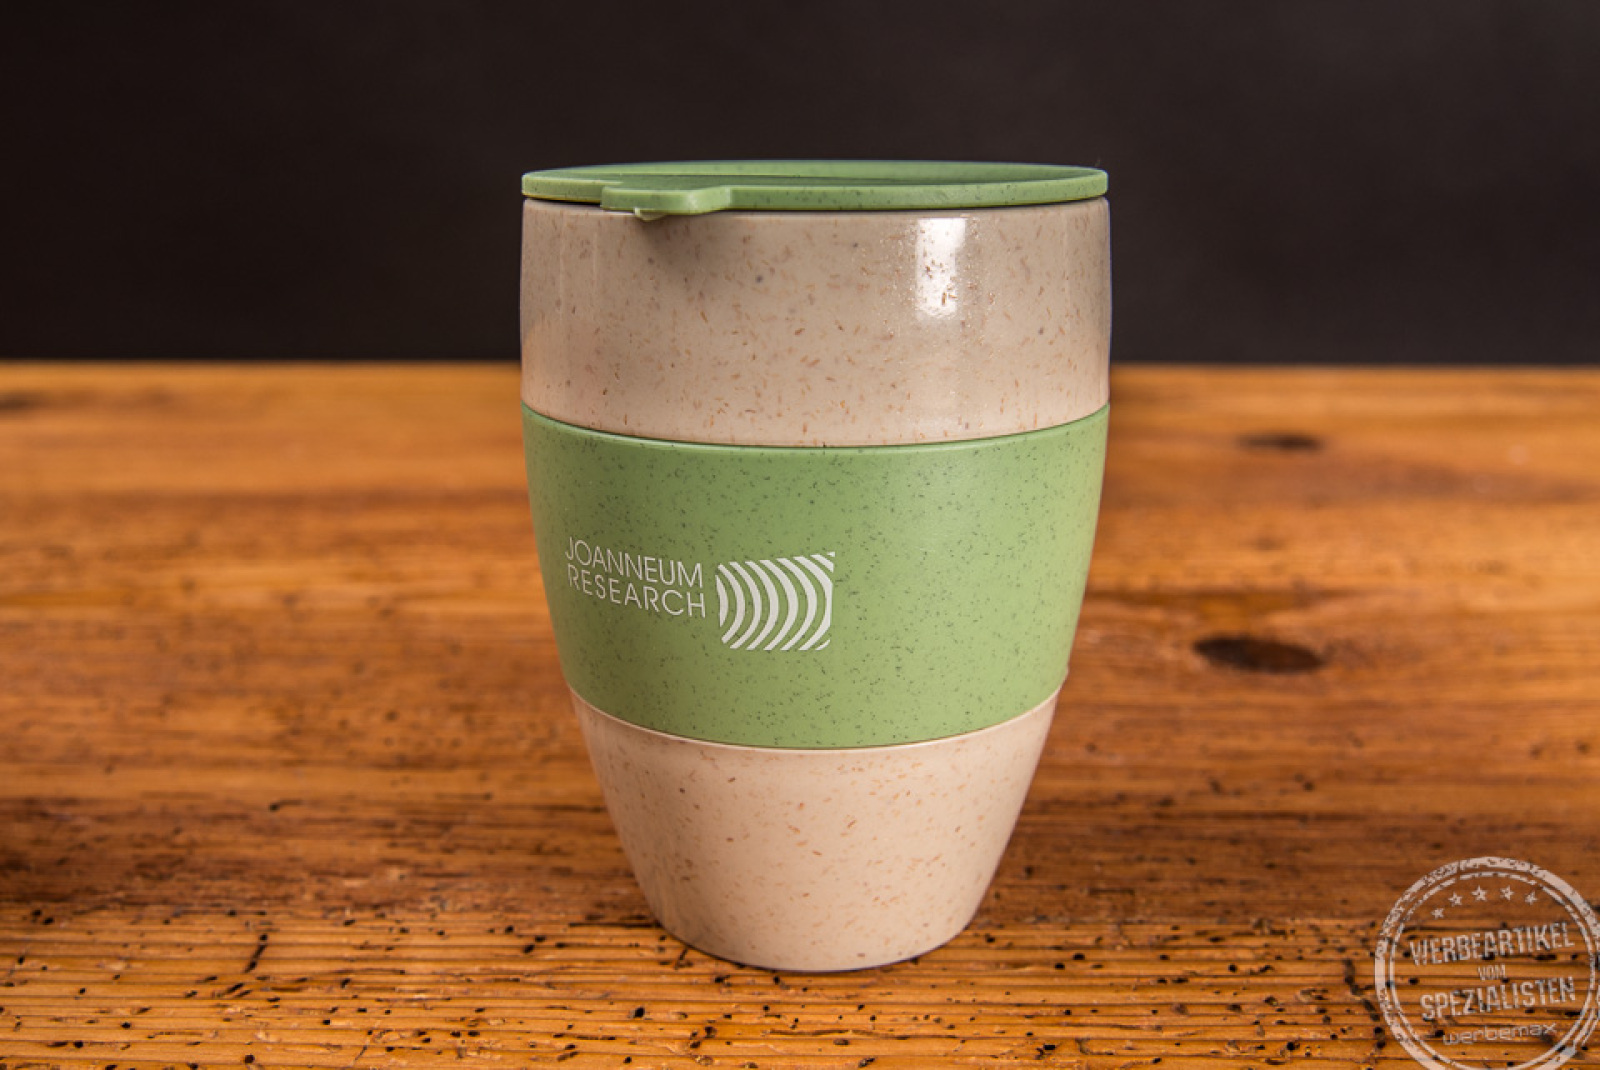 Thermos Kaffeebecher Aroma to go mit grünem Deckel und grüner Manschette als Werbeartikel.